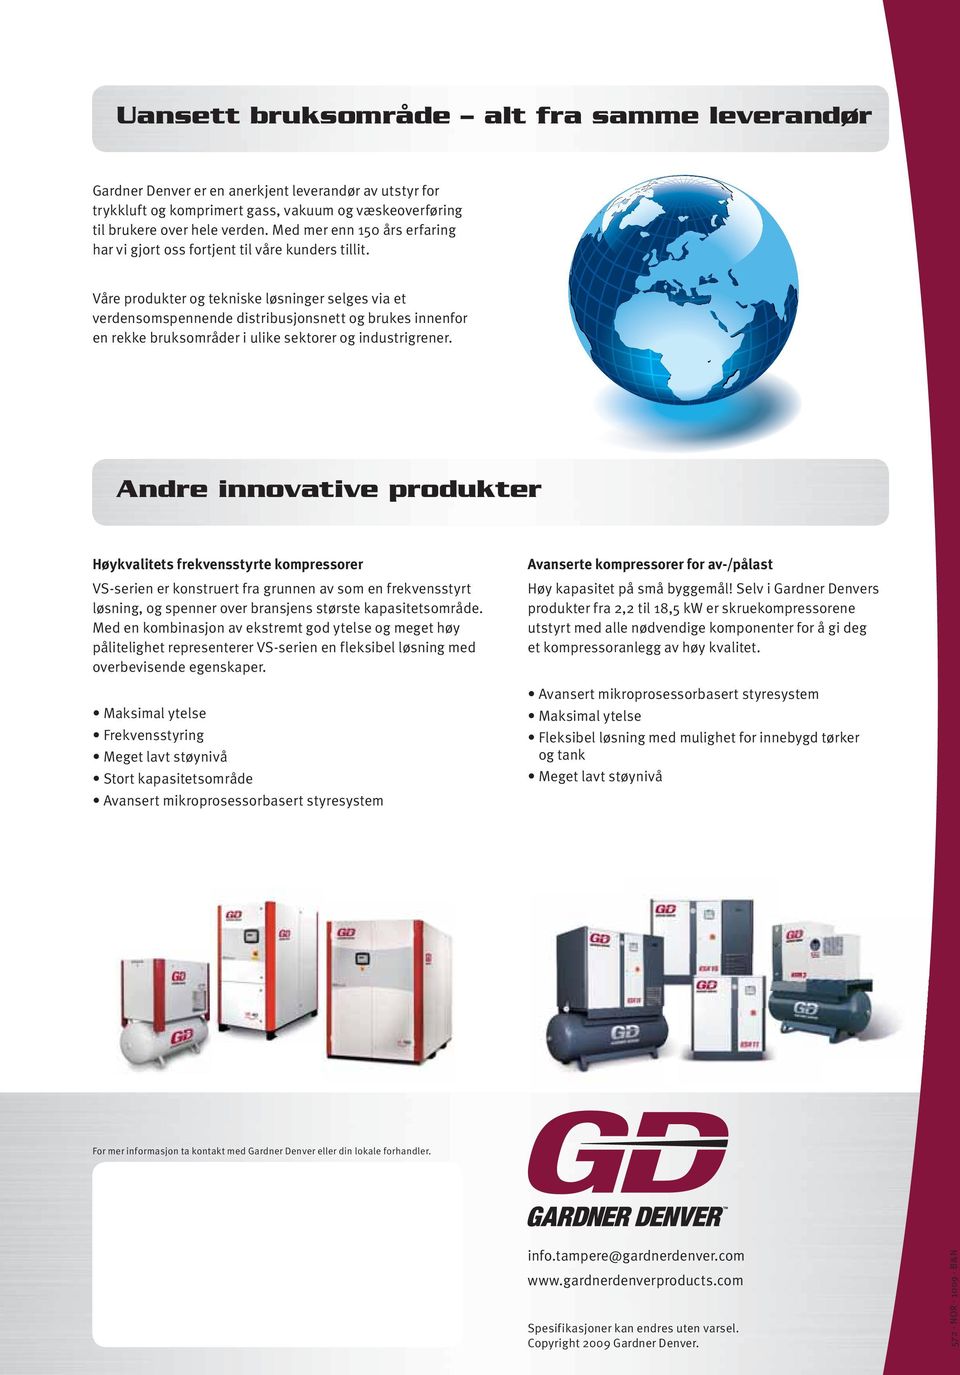 Våre produkter og tekniske løsninger selges via et verdensomspennende distribusjonsnett og brukes innenfor en rekke bruksområder i ulike sektorer og industrigrener.